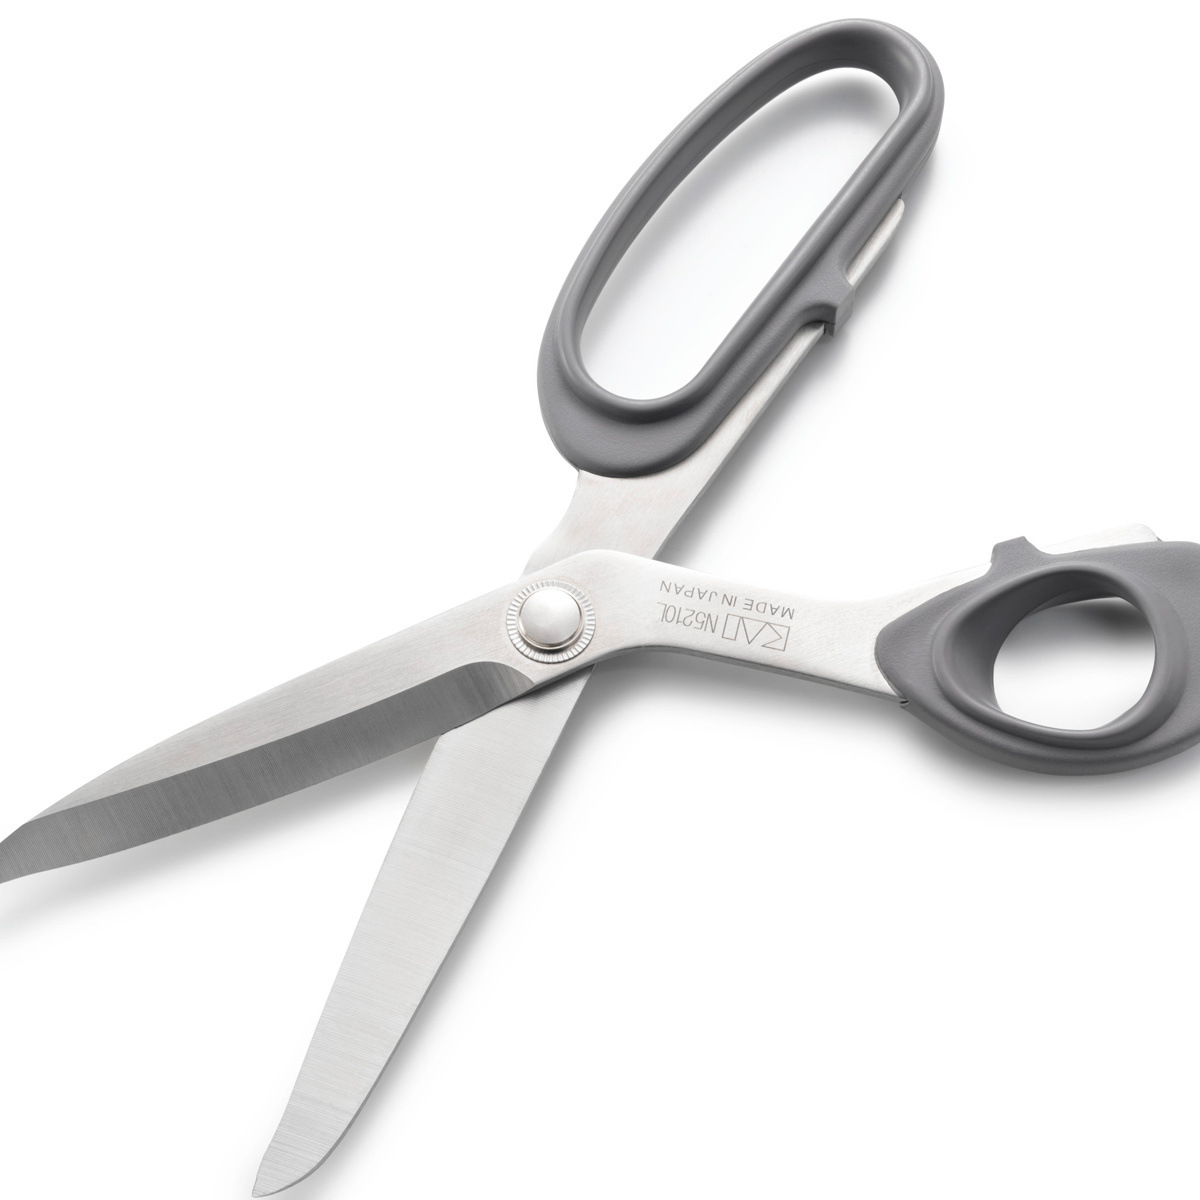 Ножницы Prym для левшей портновские со стальными лезвиями и мягкими прорезиненными ручками 21 см 610513 - фото 5